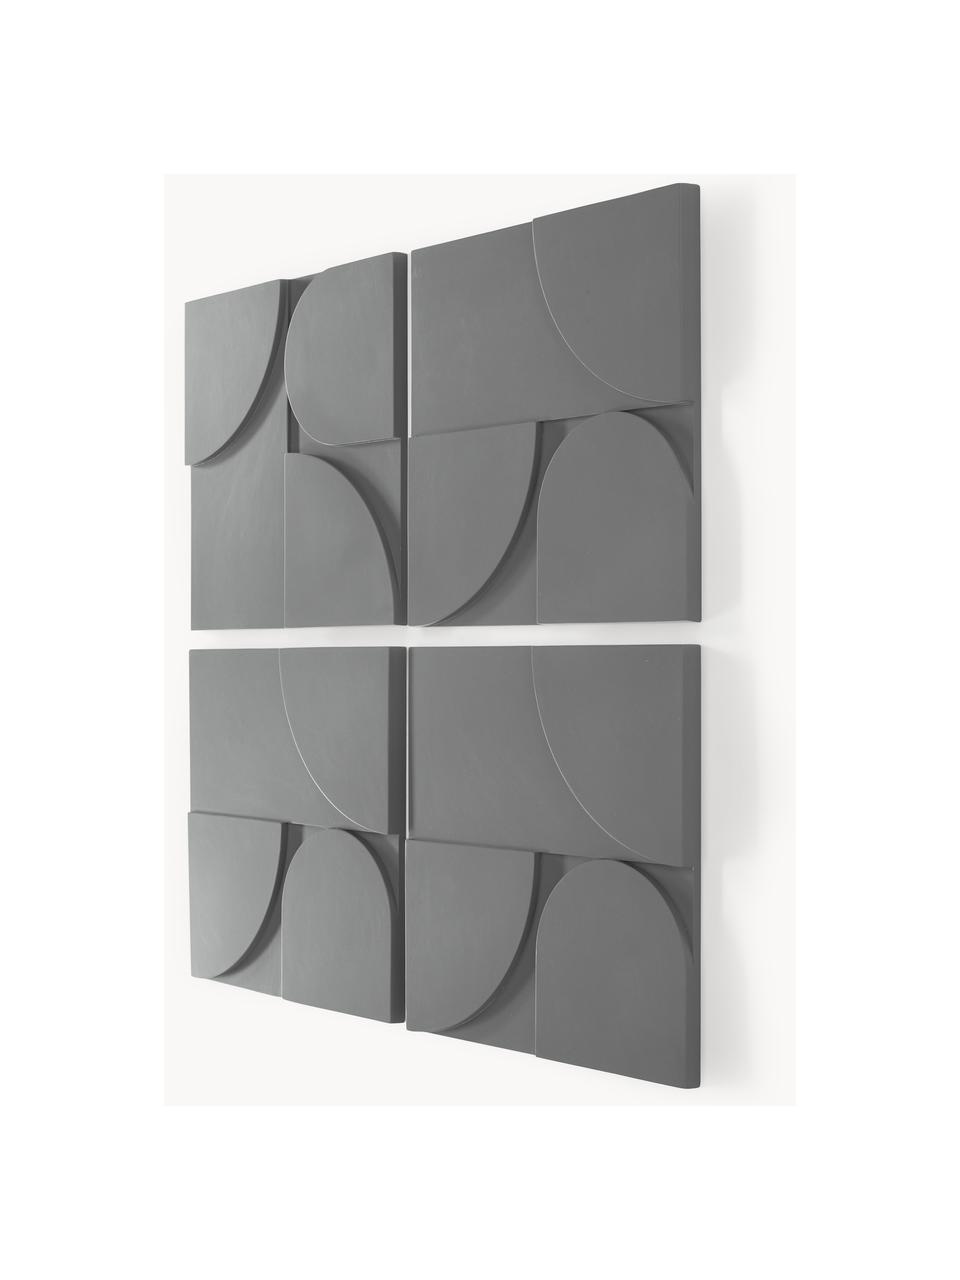 Sada nástěnných dekorací Massimo, 4 díly, MDF deska (dřevovláknitá deska střední hustoty), Tmavě šedá, Š 80 cm, V 80 cm